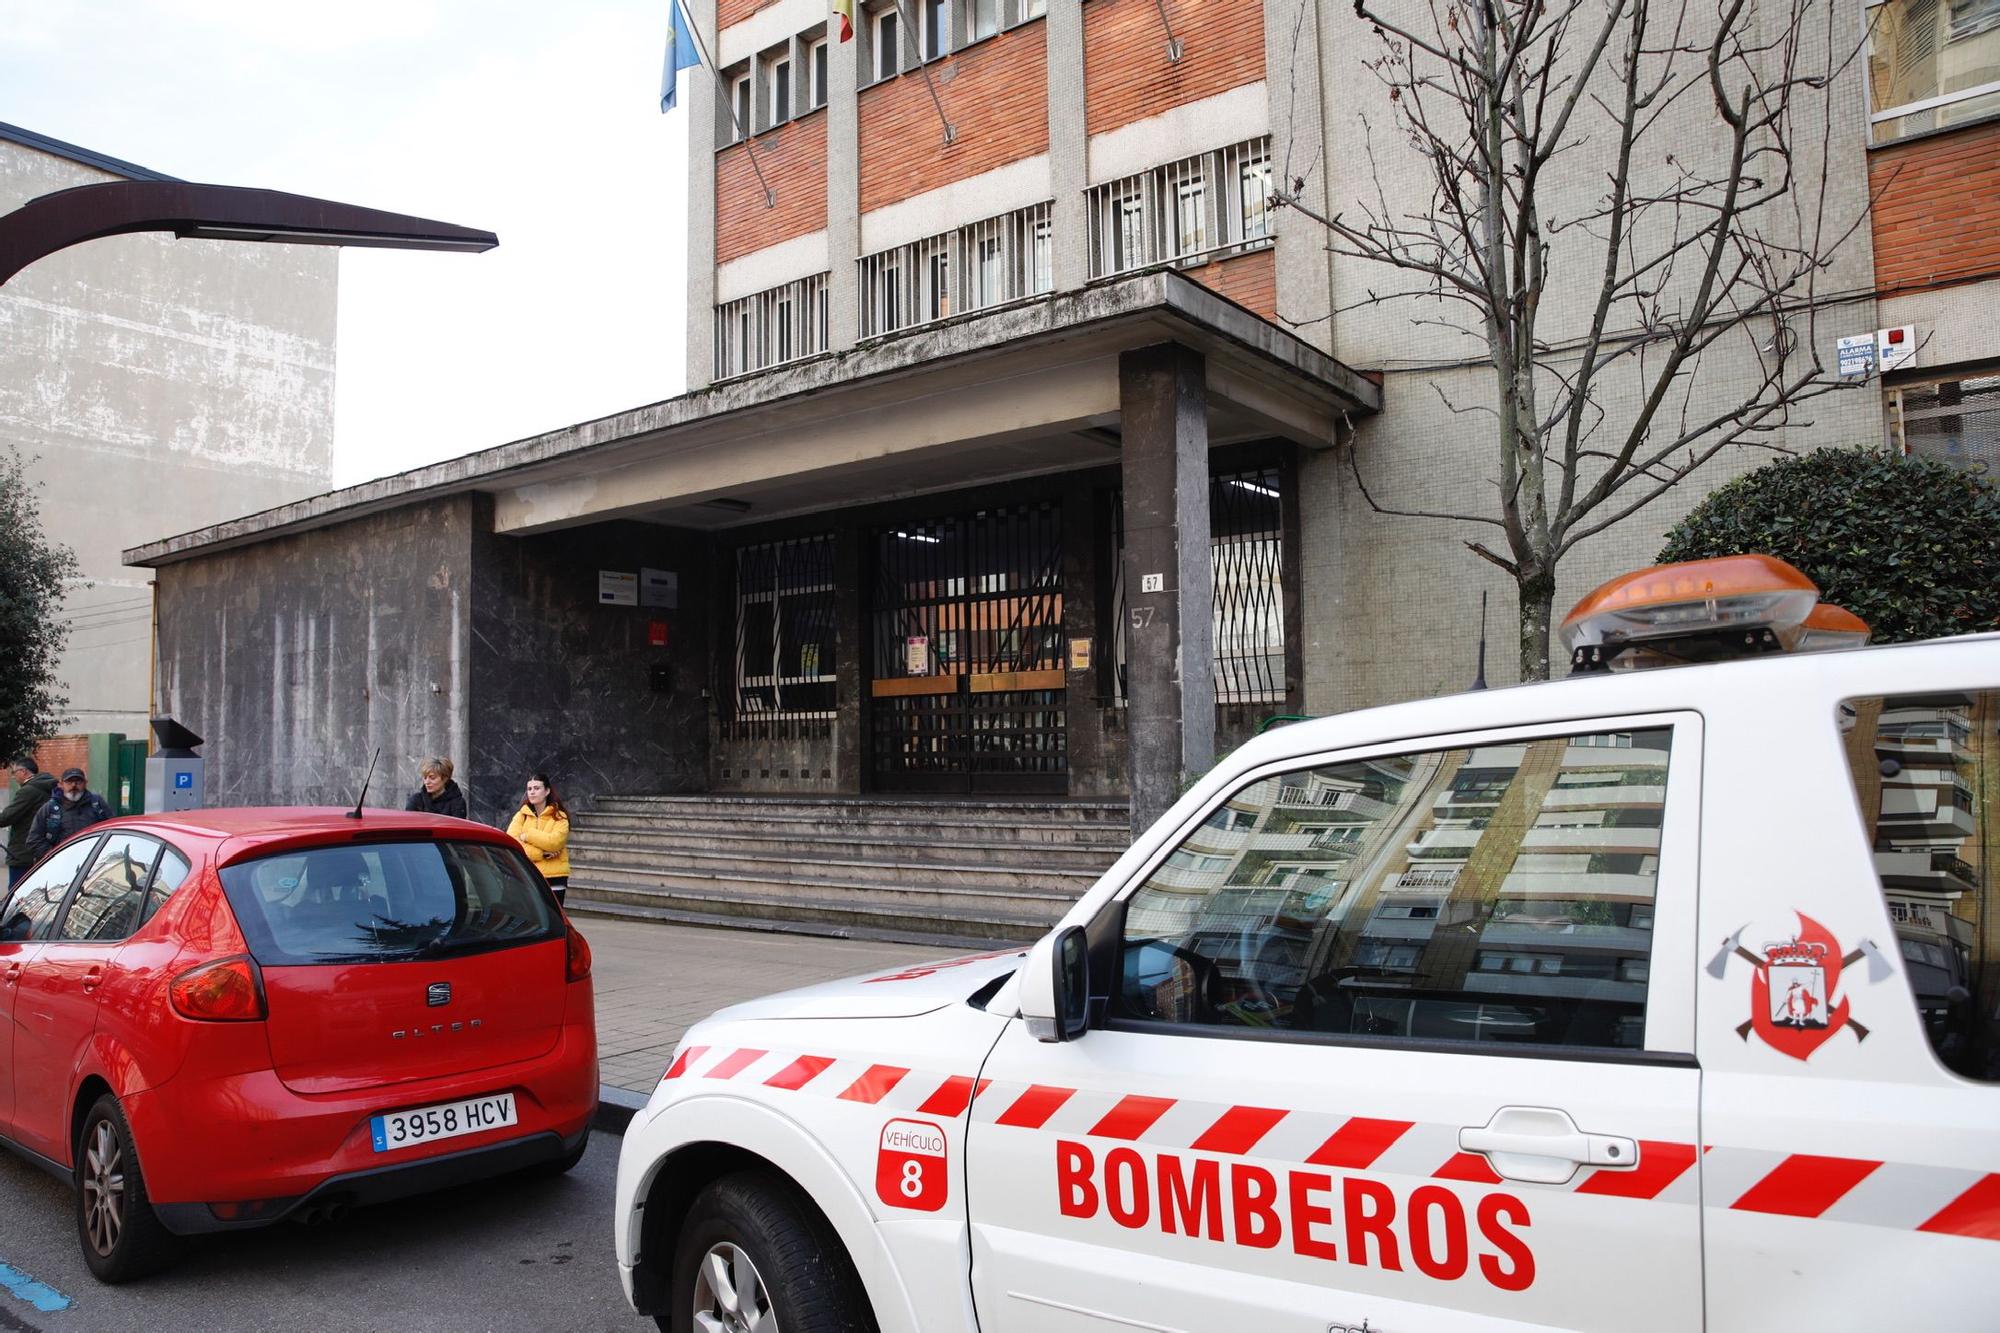 EN IMÁGENES: Se derrumba el suelo de una clase del colegio Rey Pelayo en Gijón